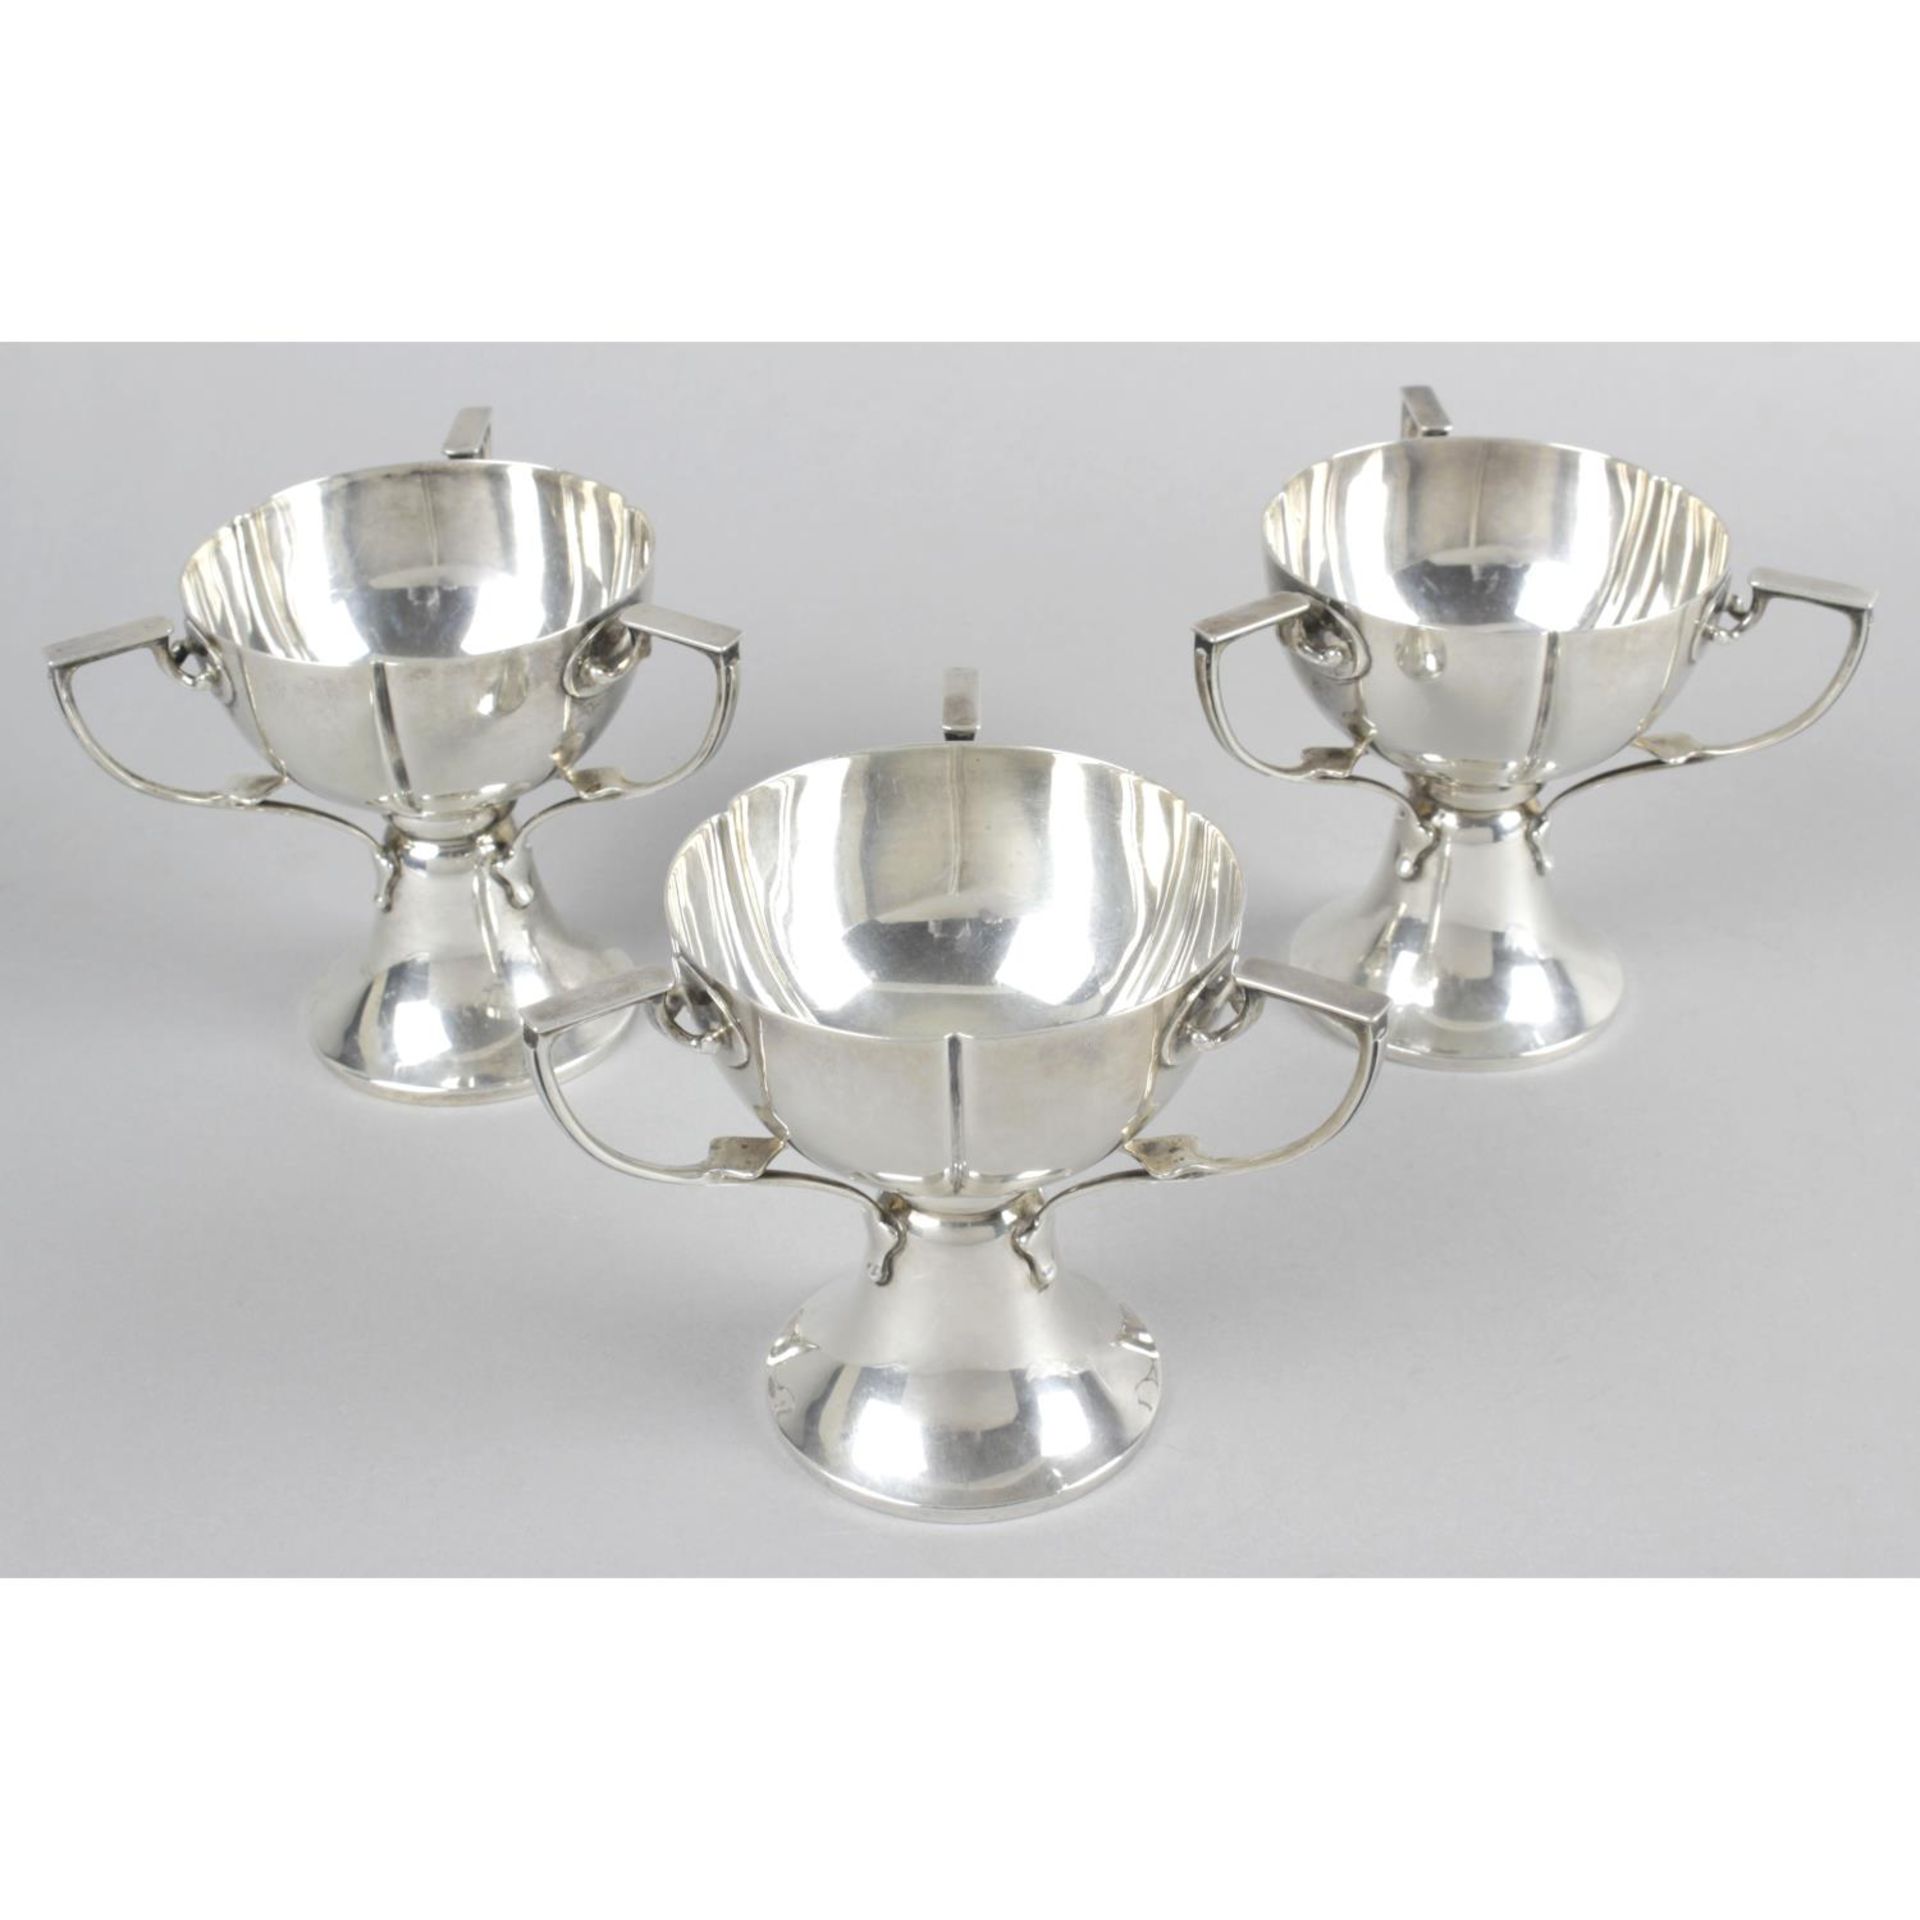 Three Edwardian silver pedestal cups,